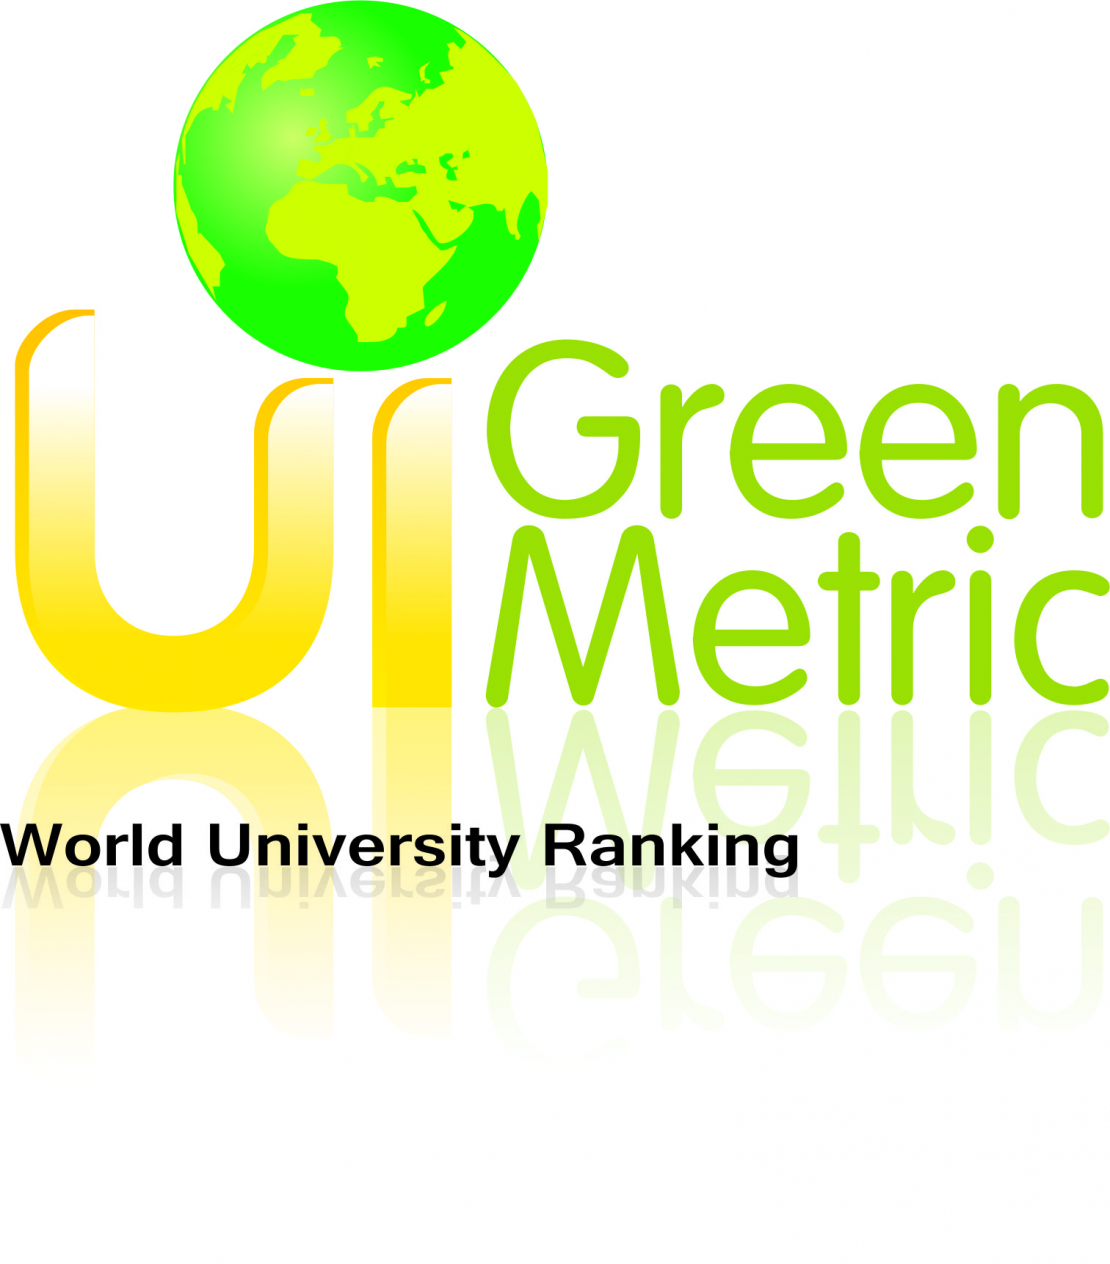 RTU atzīta par vienu no 60 zaļākajām universitātēm pasaulē